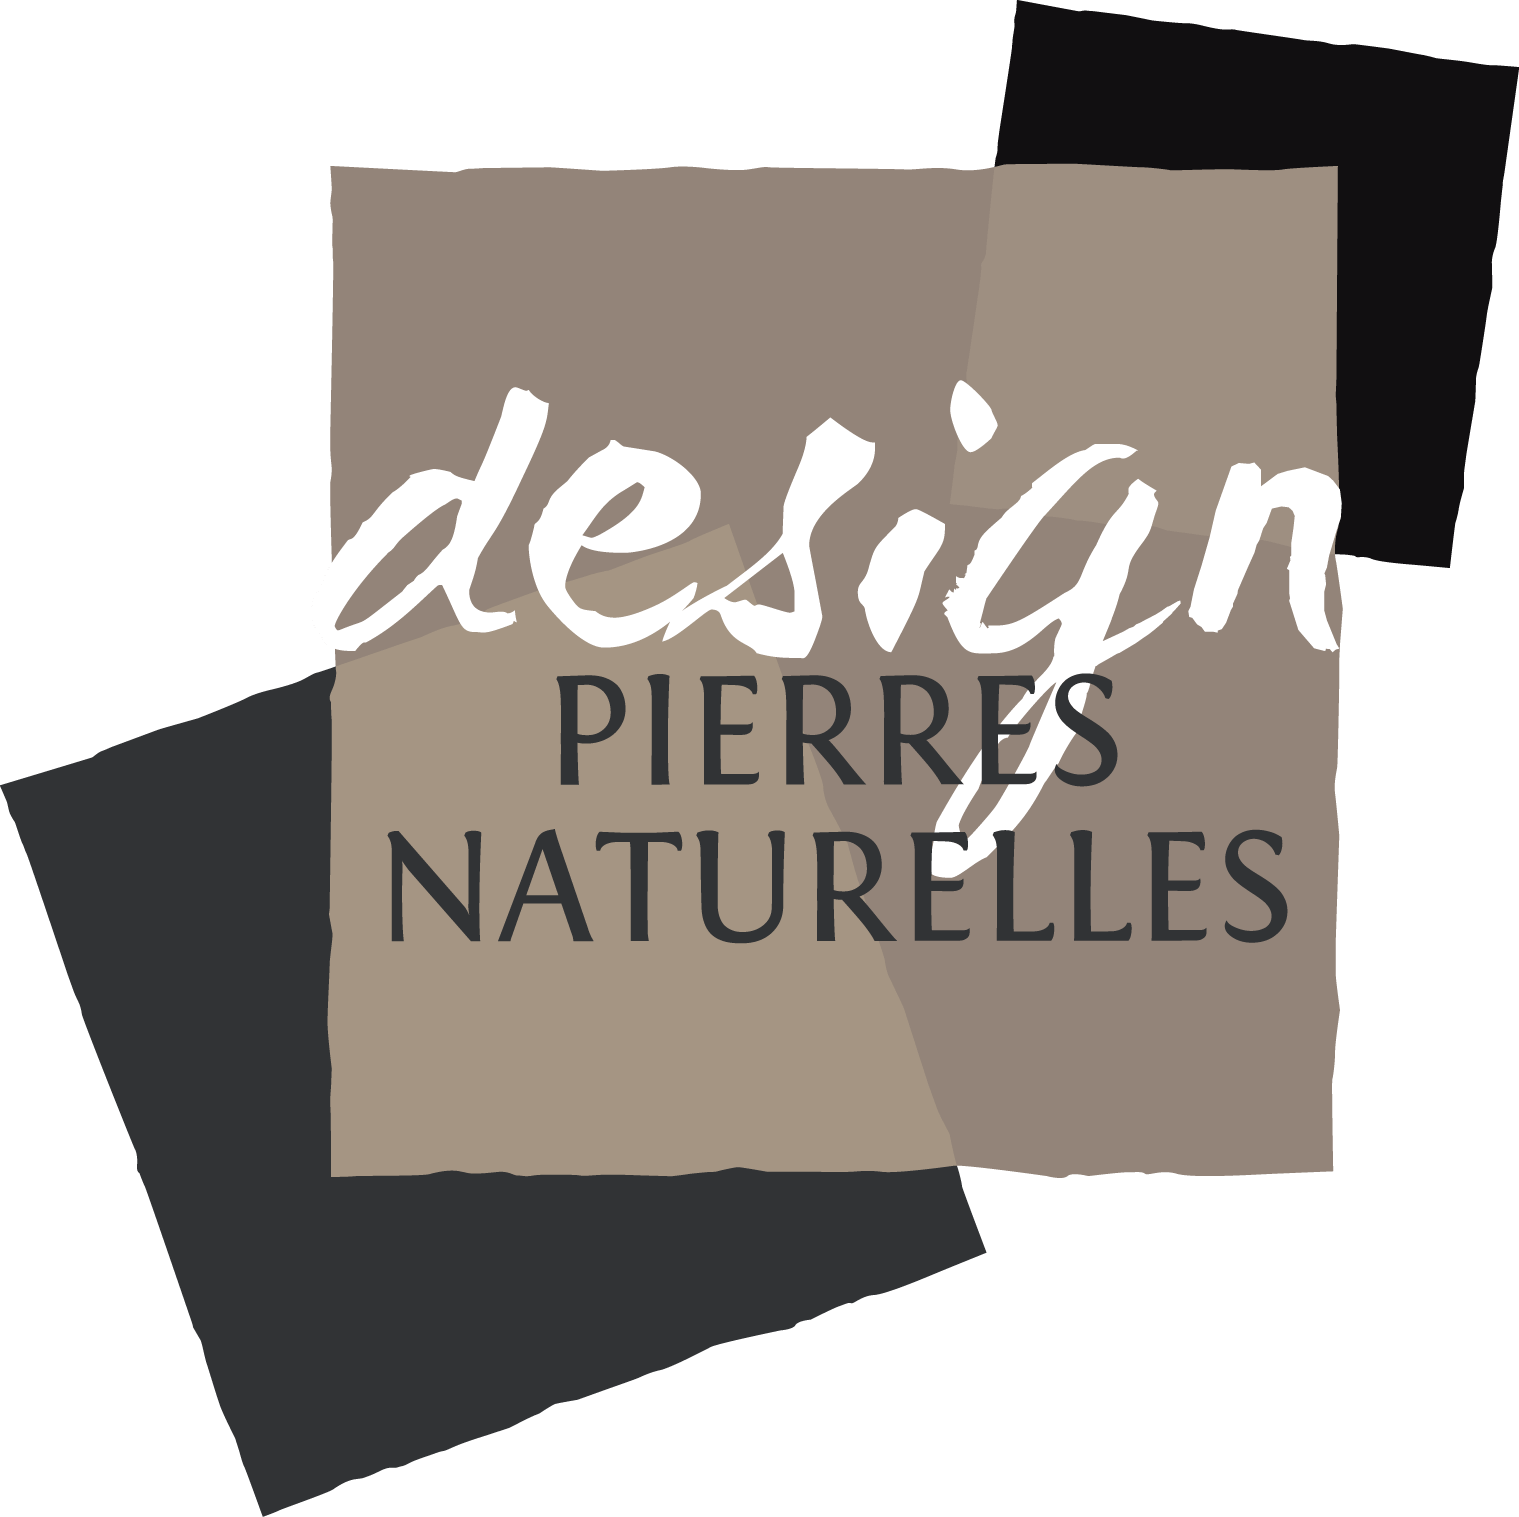 (c) Design-pierres-naturelles.fr